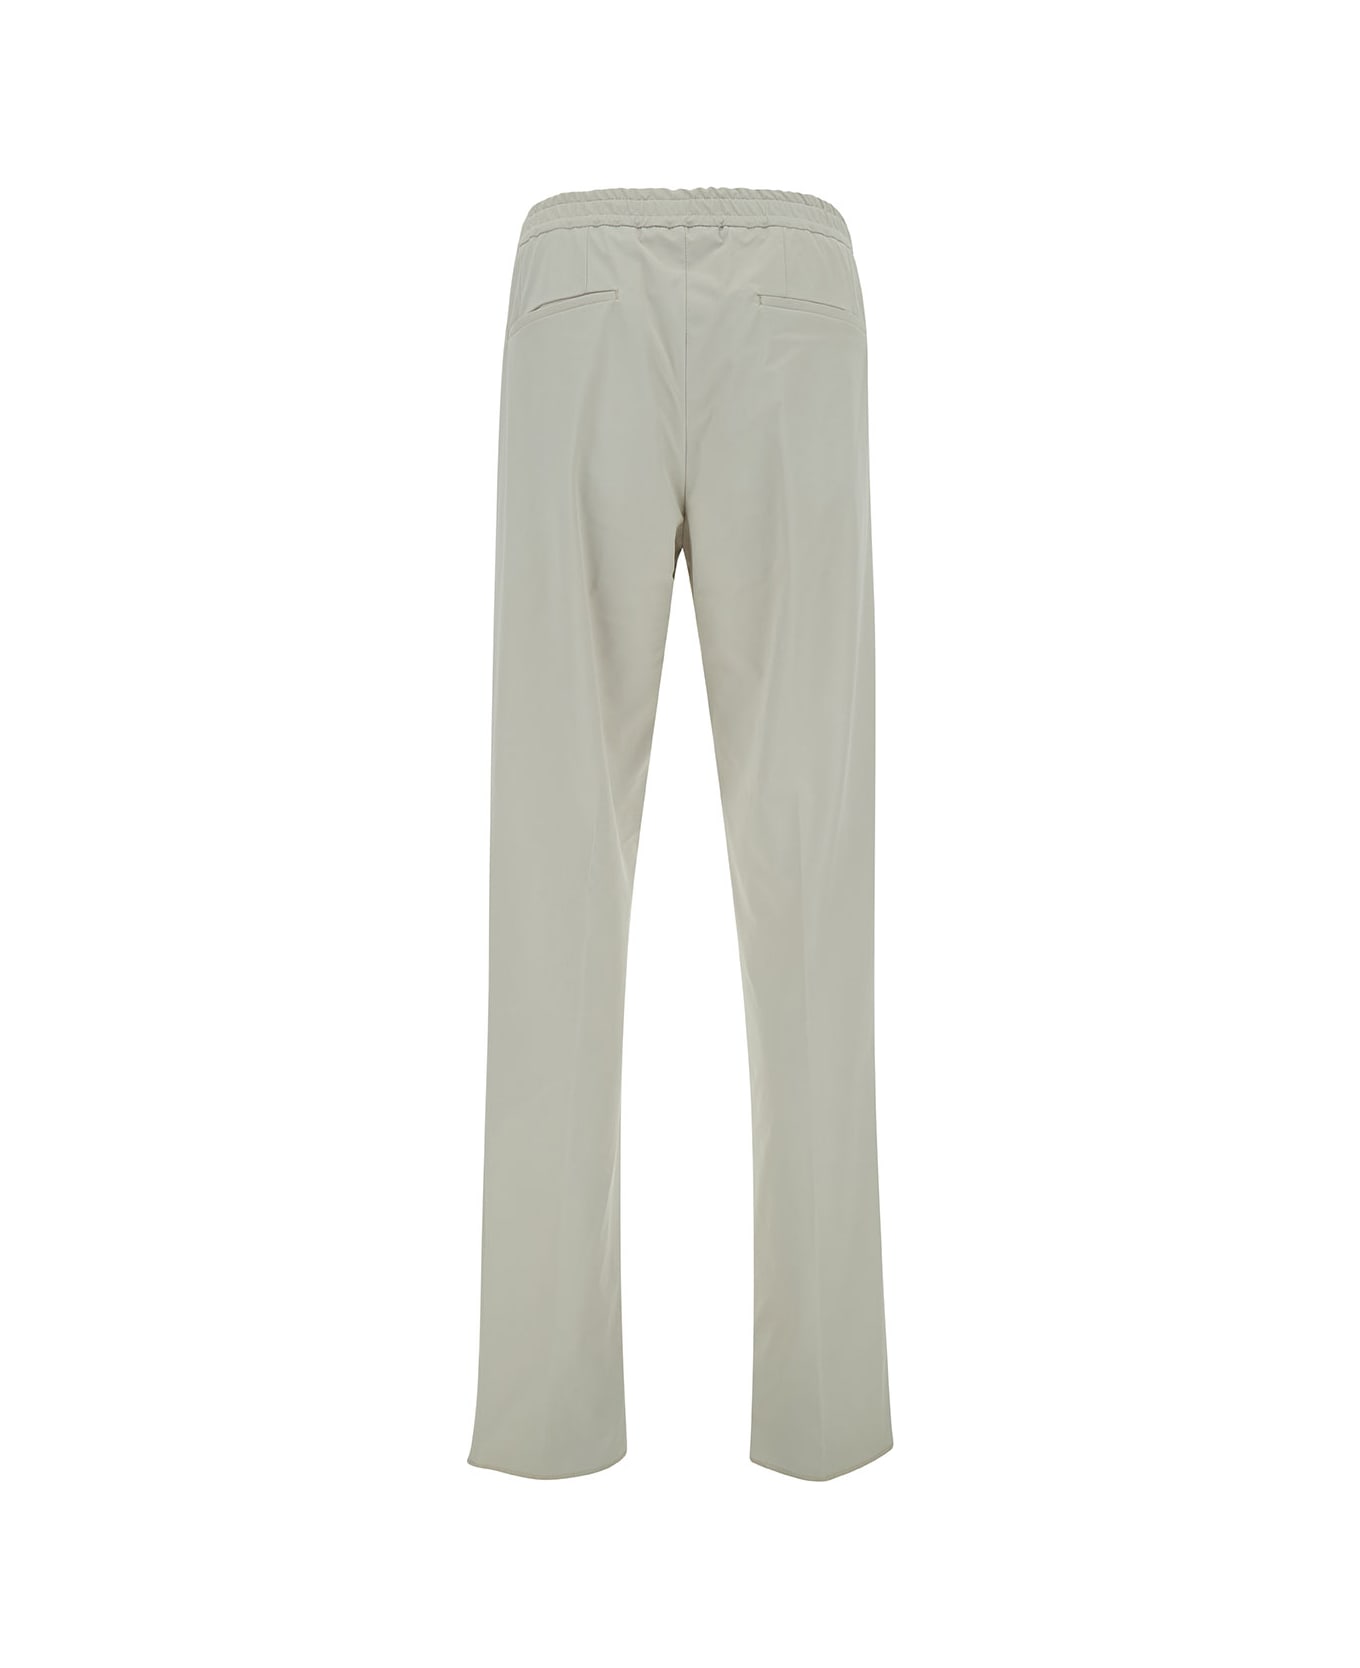 Lardini Grey Loose Pants With Drawstring In Stretch Polyamide Man - Grey